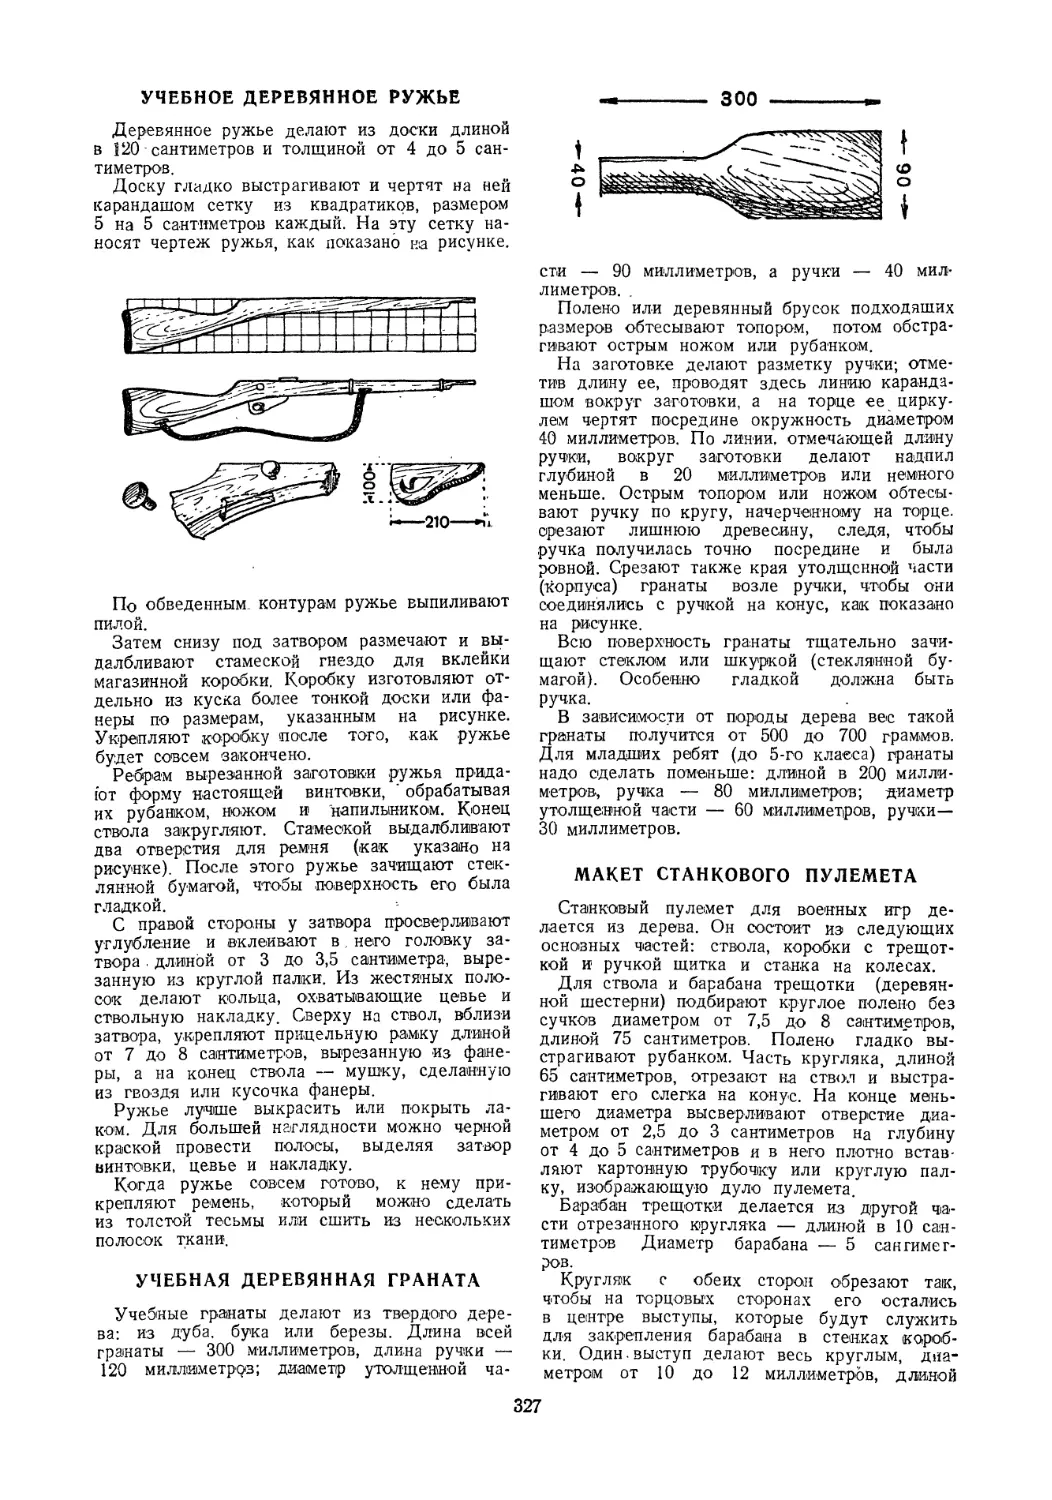 Учебное деревянное ружье
Учебная деревянная граната
Макет станкового пулемета